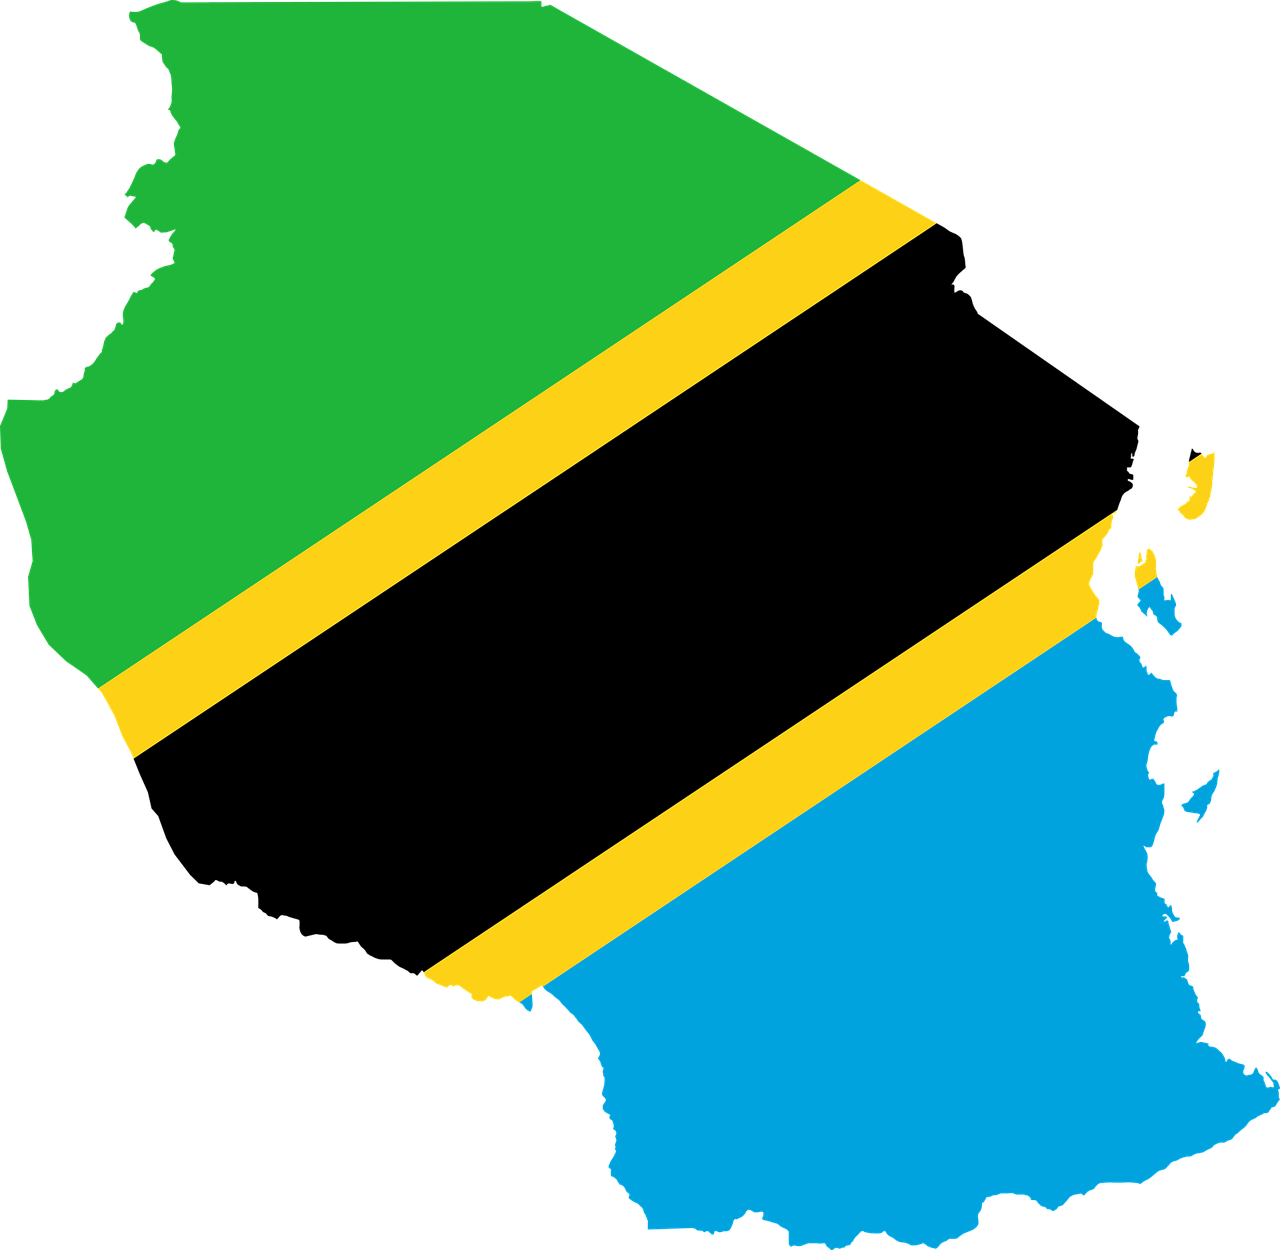 La muerte priva a Tanzania de 10 personalidades destacadas en febrero